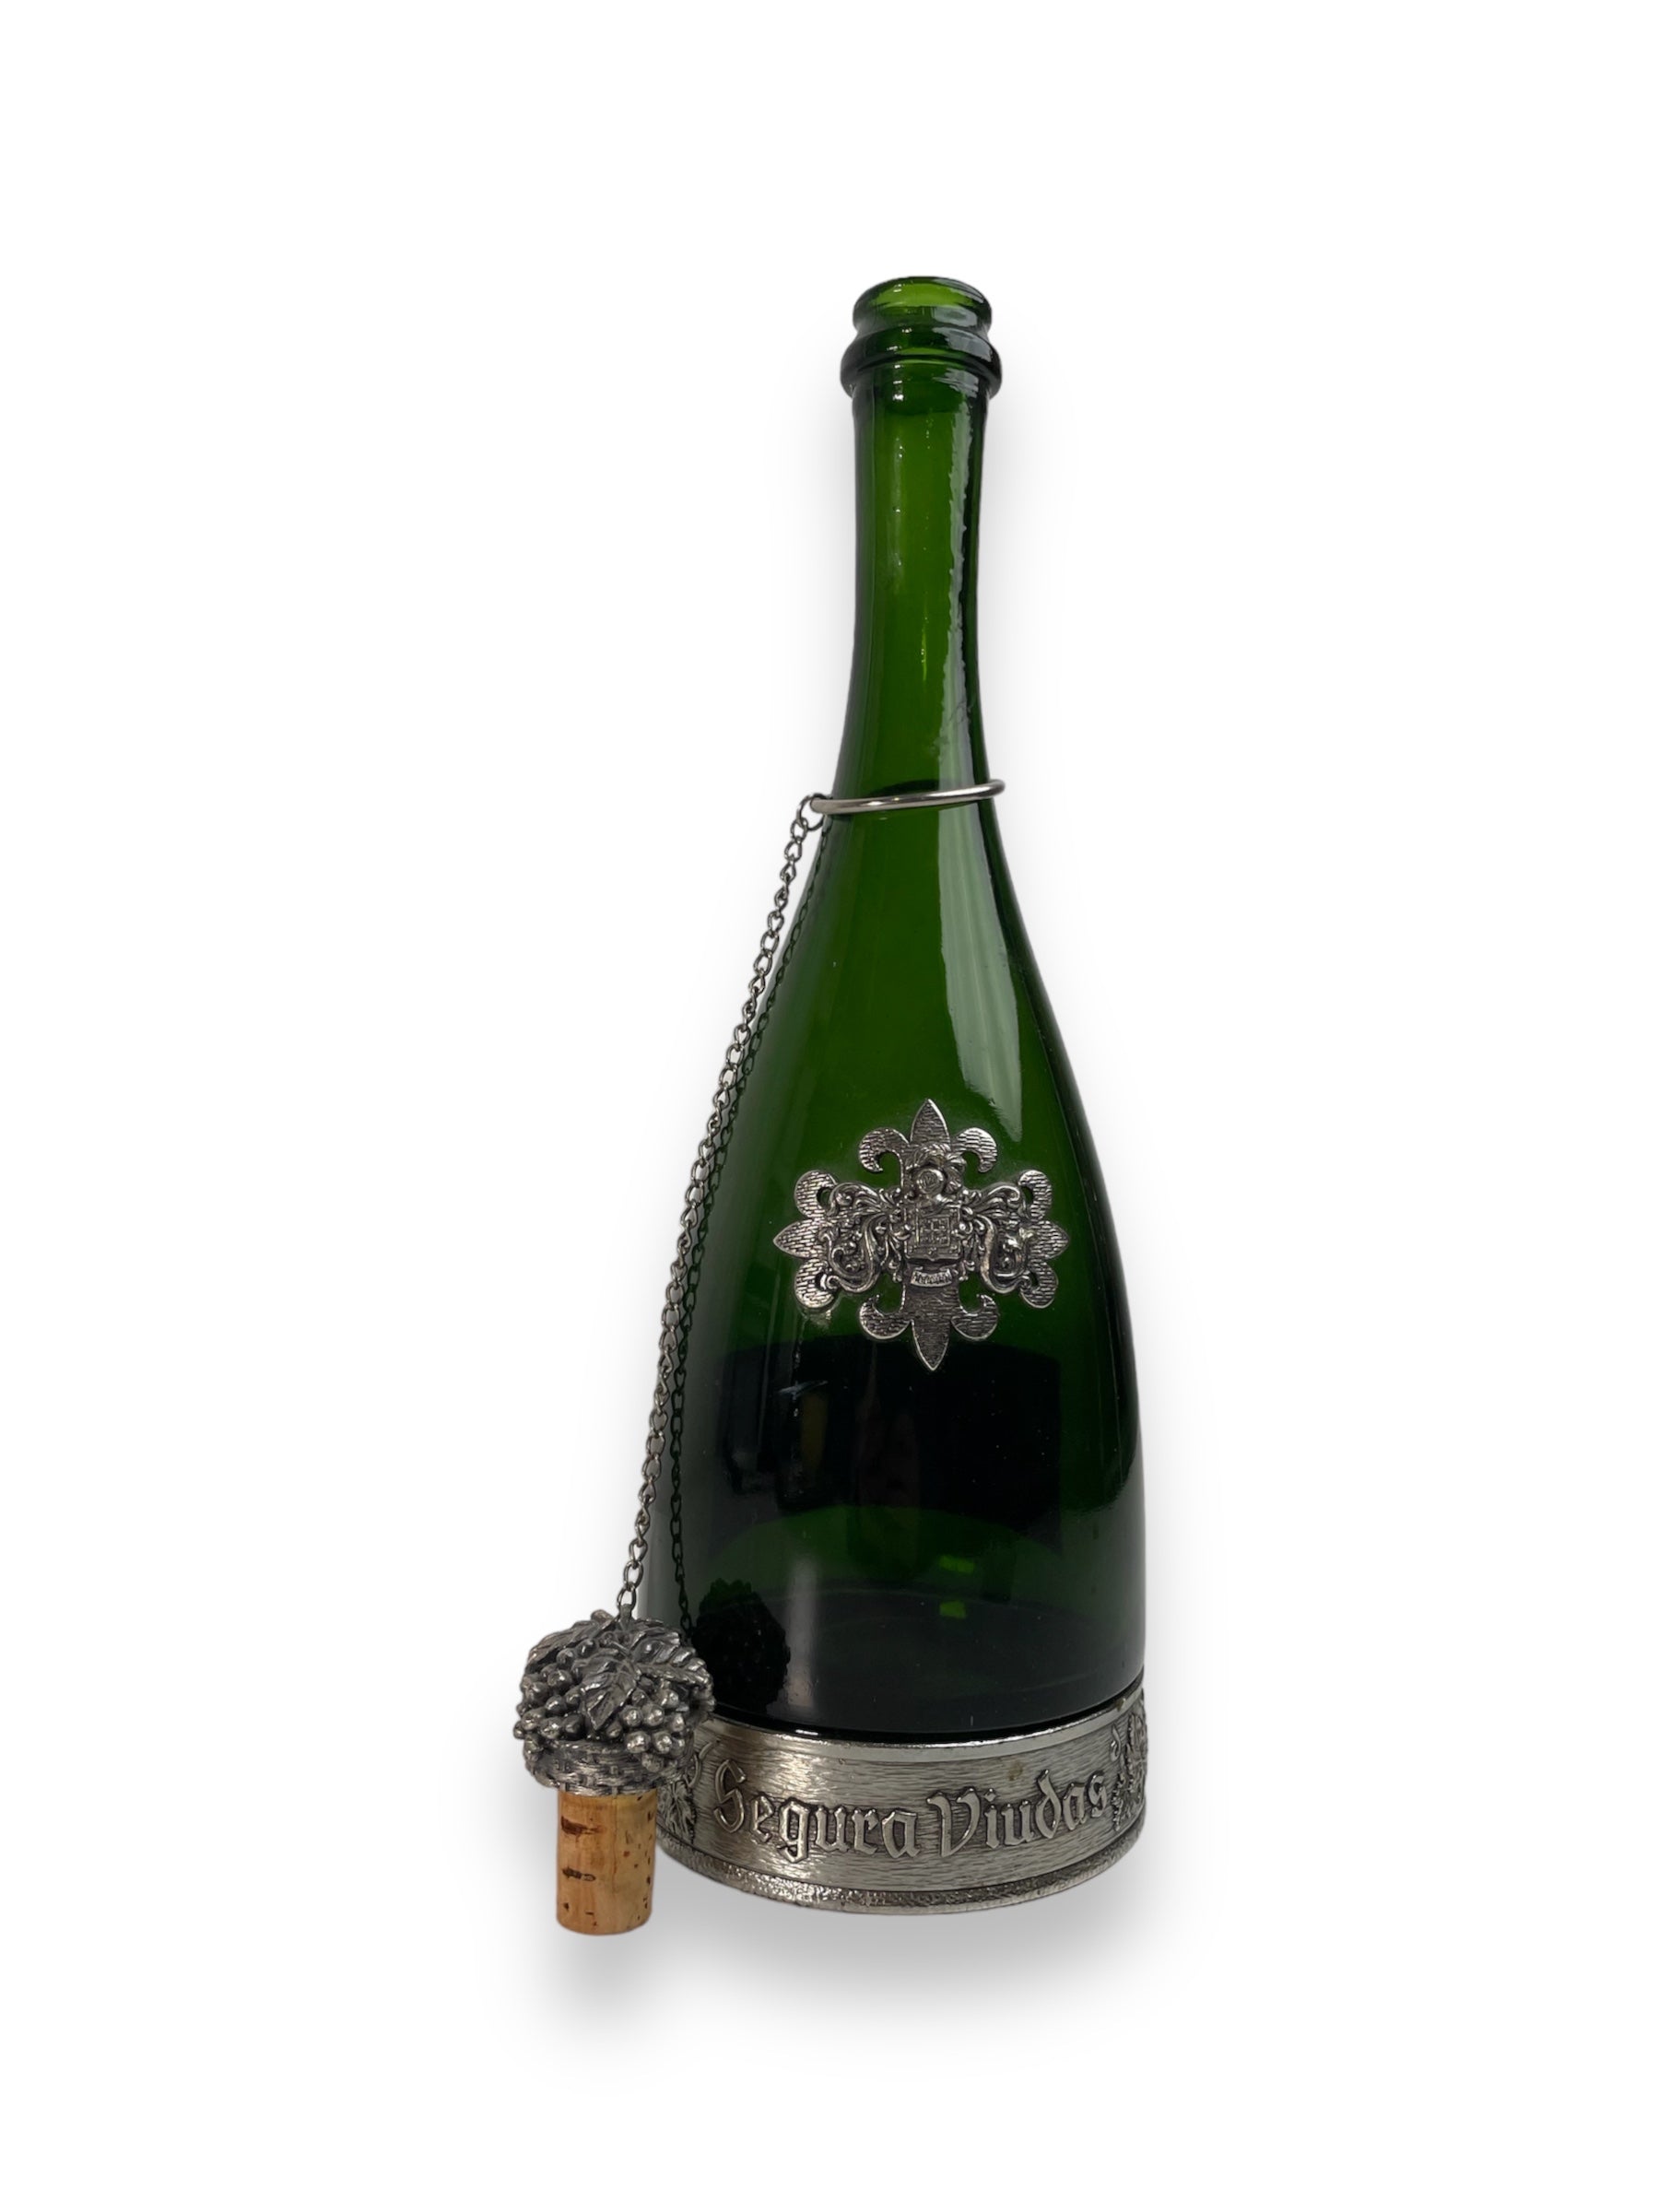 Vintage Segura Viudas Forest Green Collectible Wine Bottle